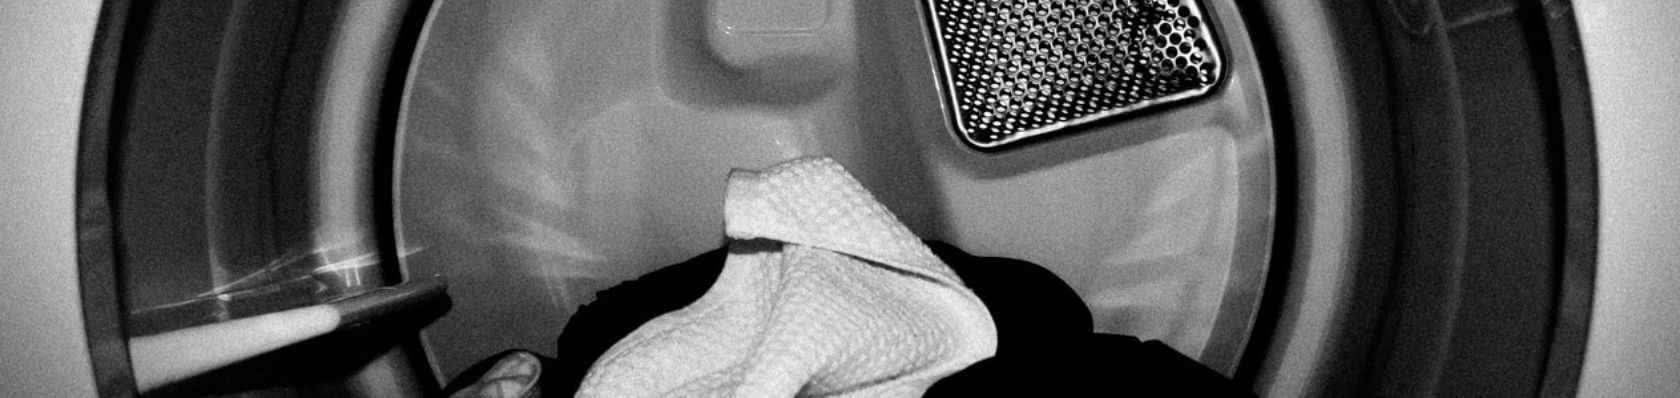 La Migliore Asciugatrice Miele del 2023 – Confronti e recensioni delle asciugatrici Miele